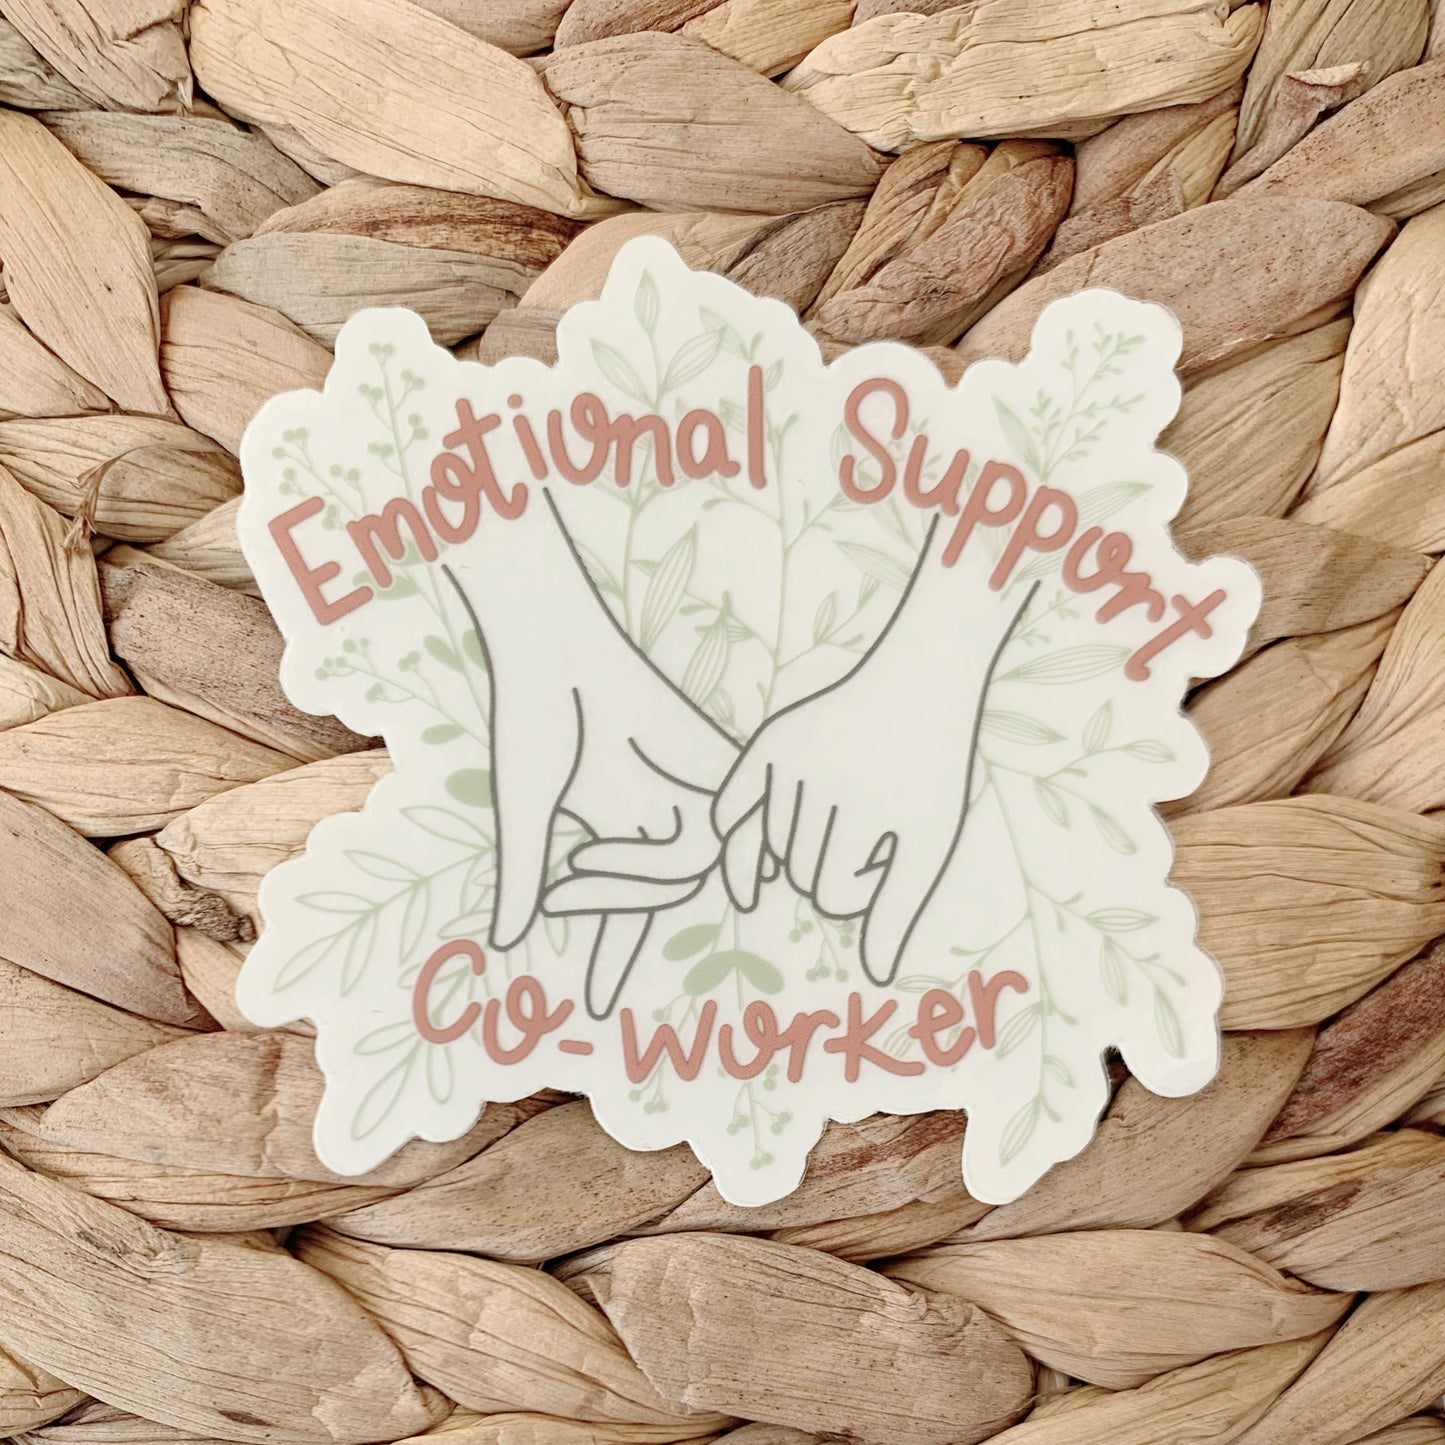 emotional support coworker sticker – Tidal Salt Co